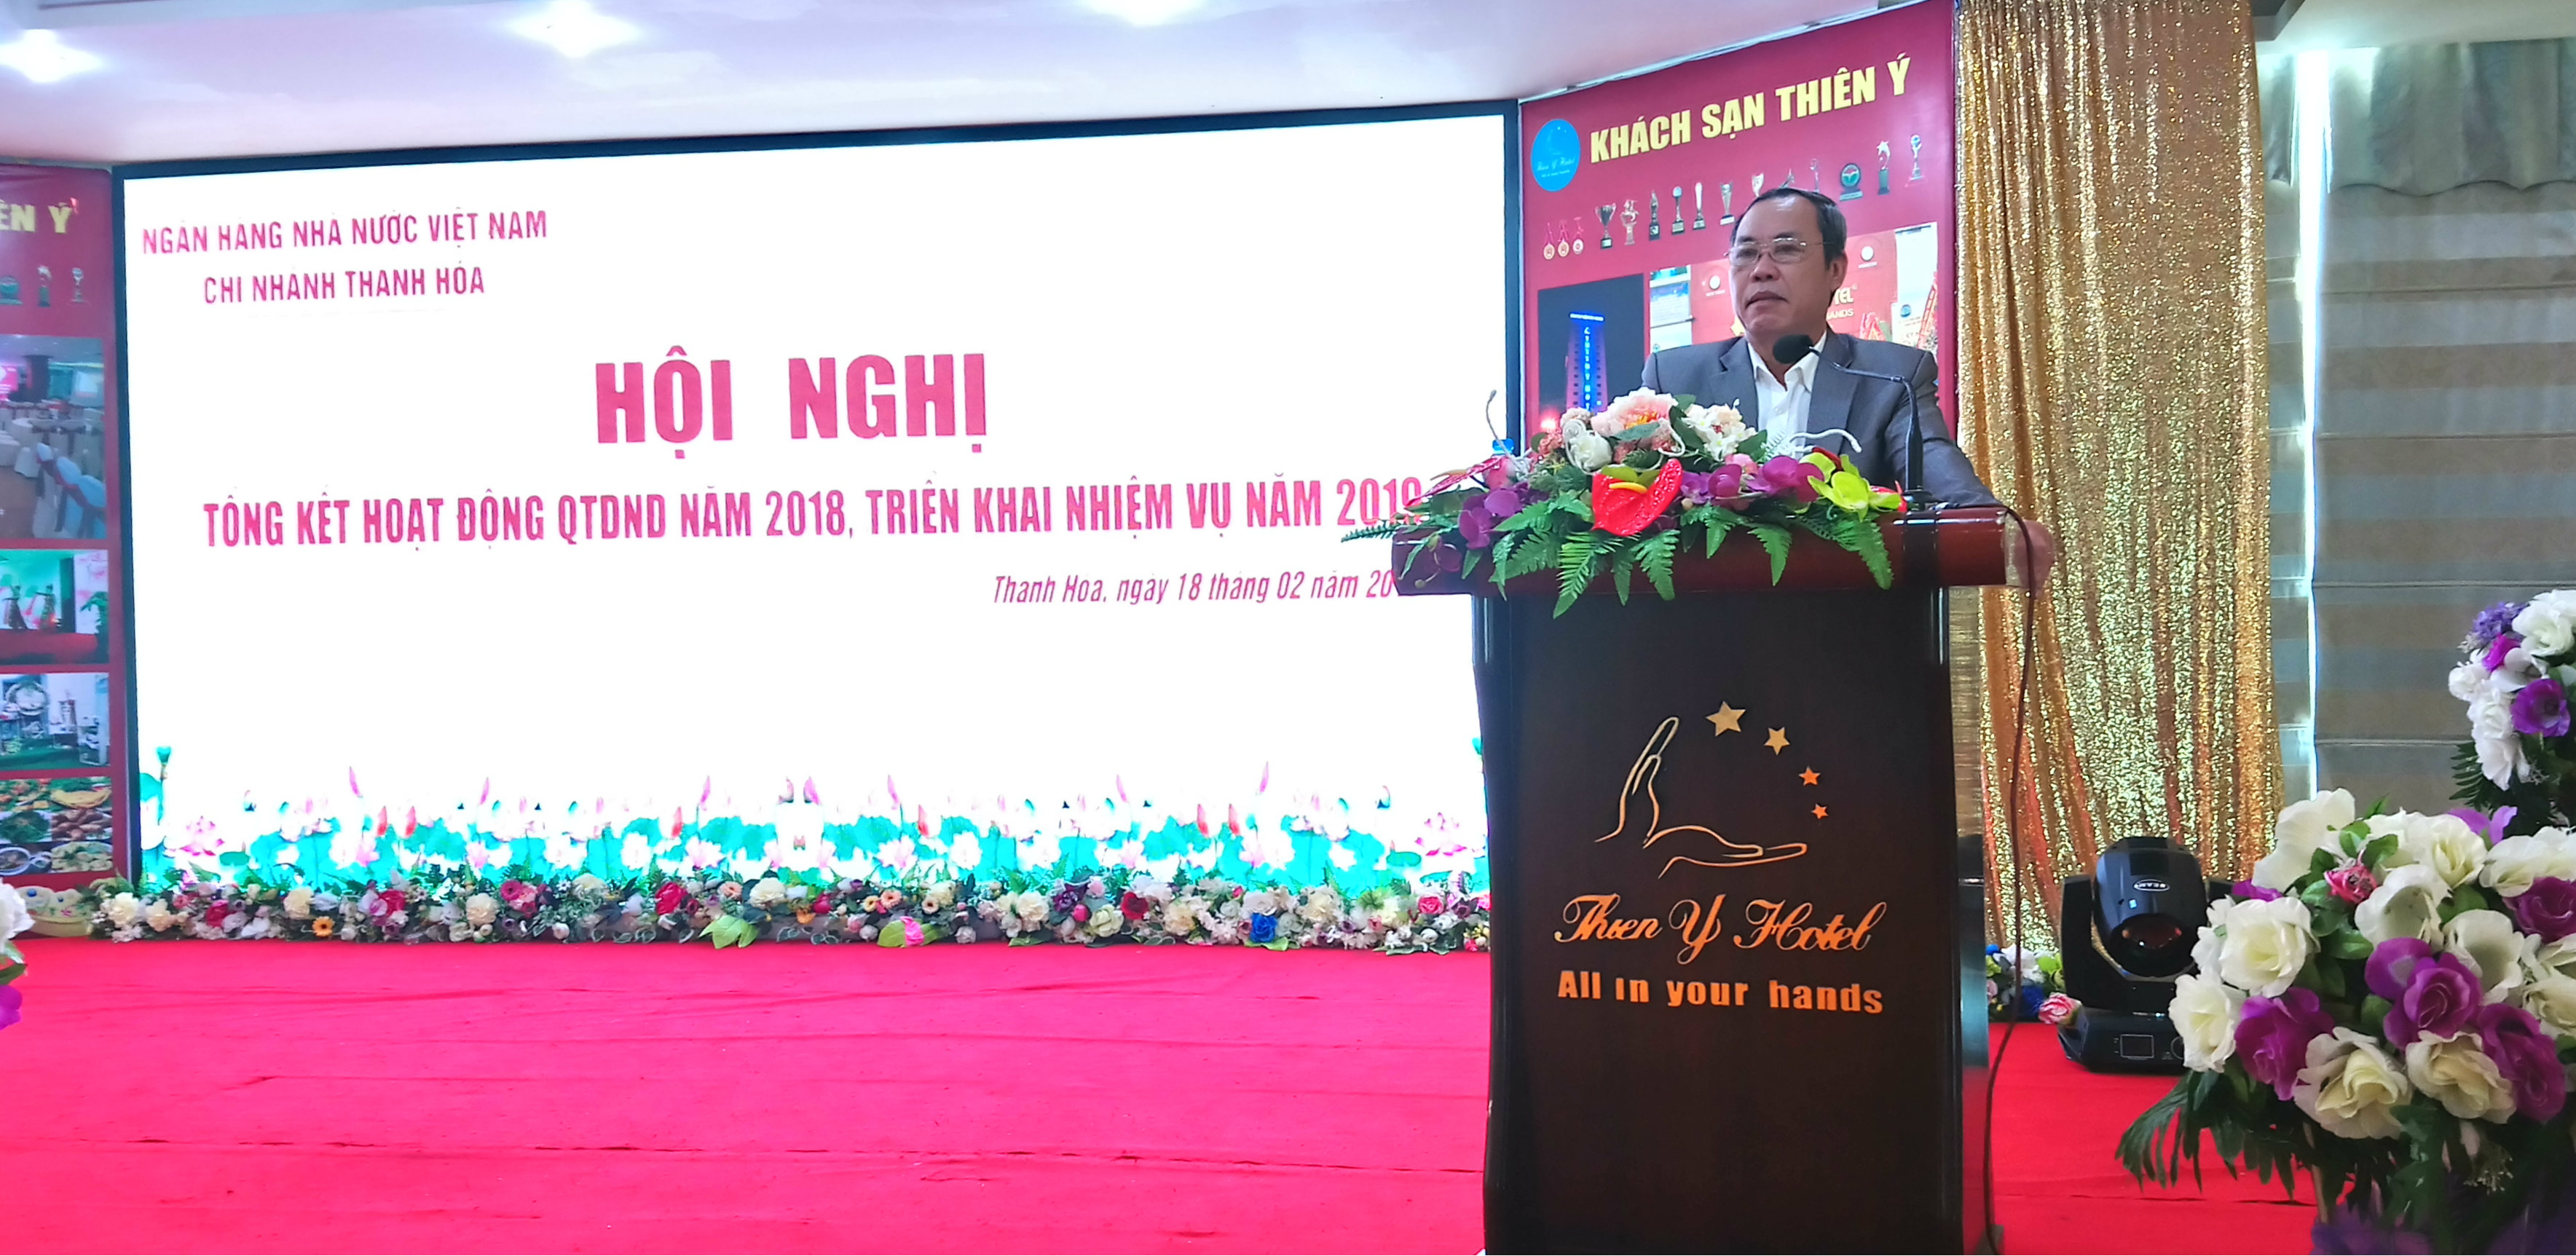 Giám đốc NHNN Chi nhánh Thanh hóa: Đ/c Nguyễn Thanh An